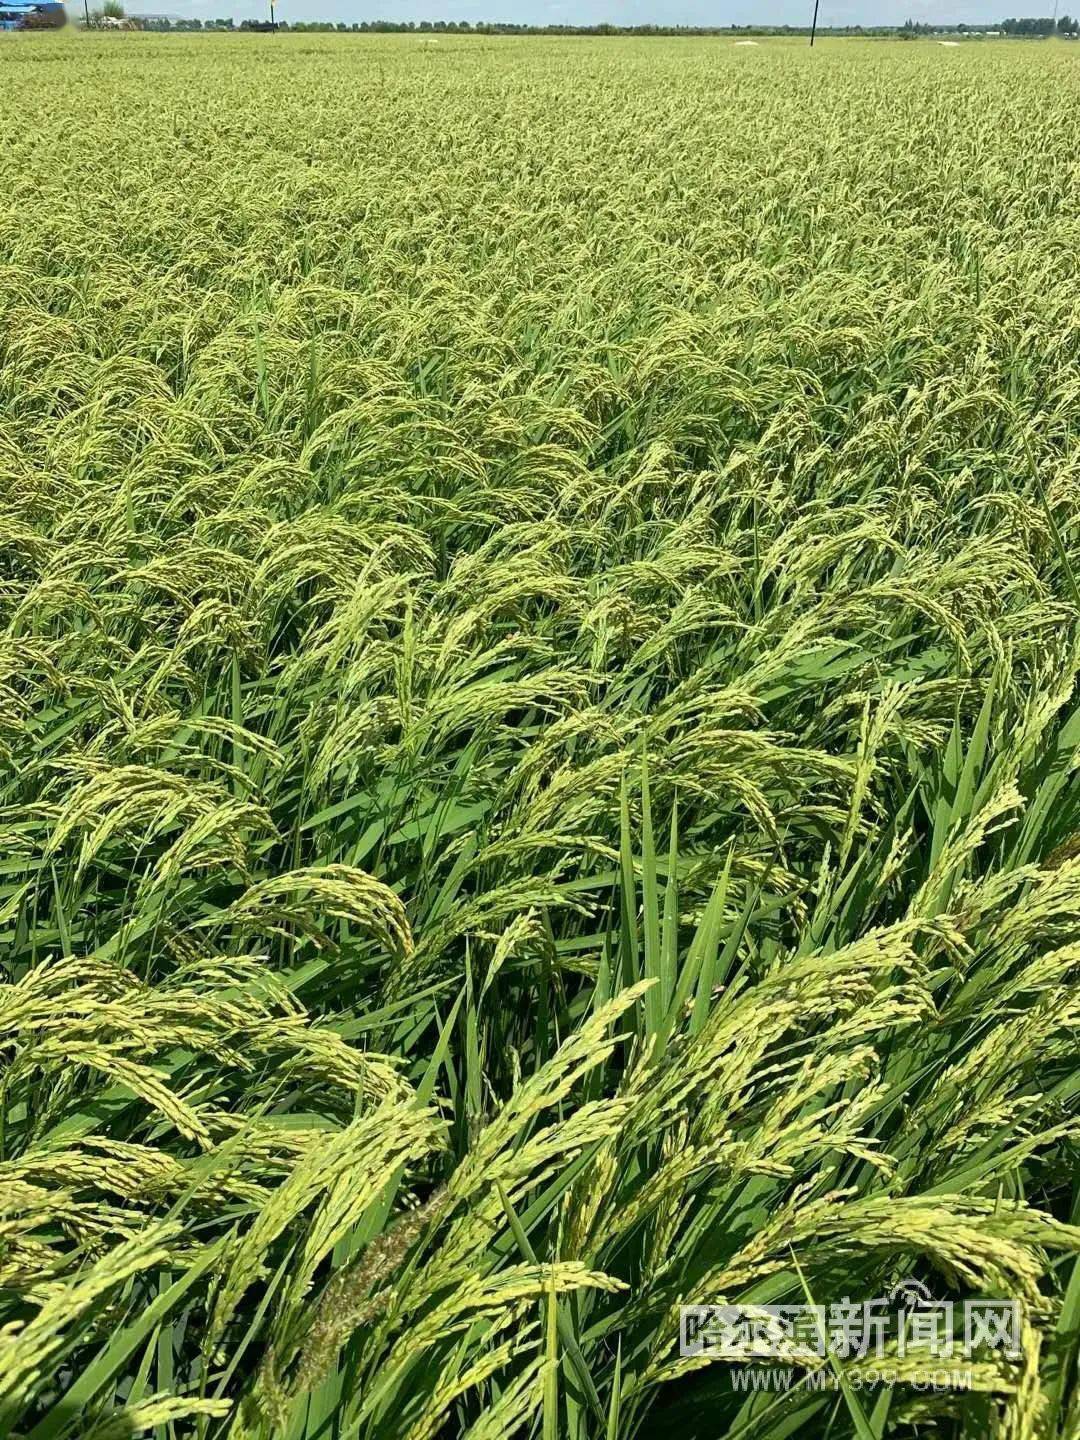 丰收在望丨我省近5800万亩水稻长势好于去年同期